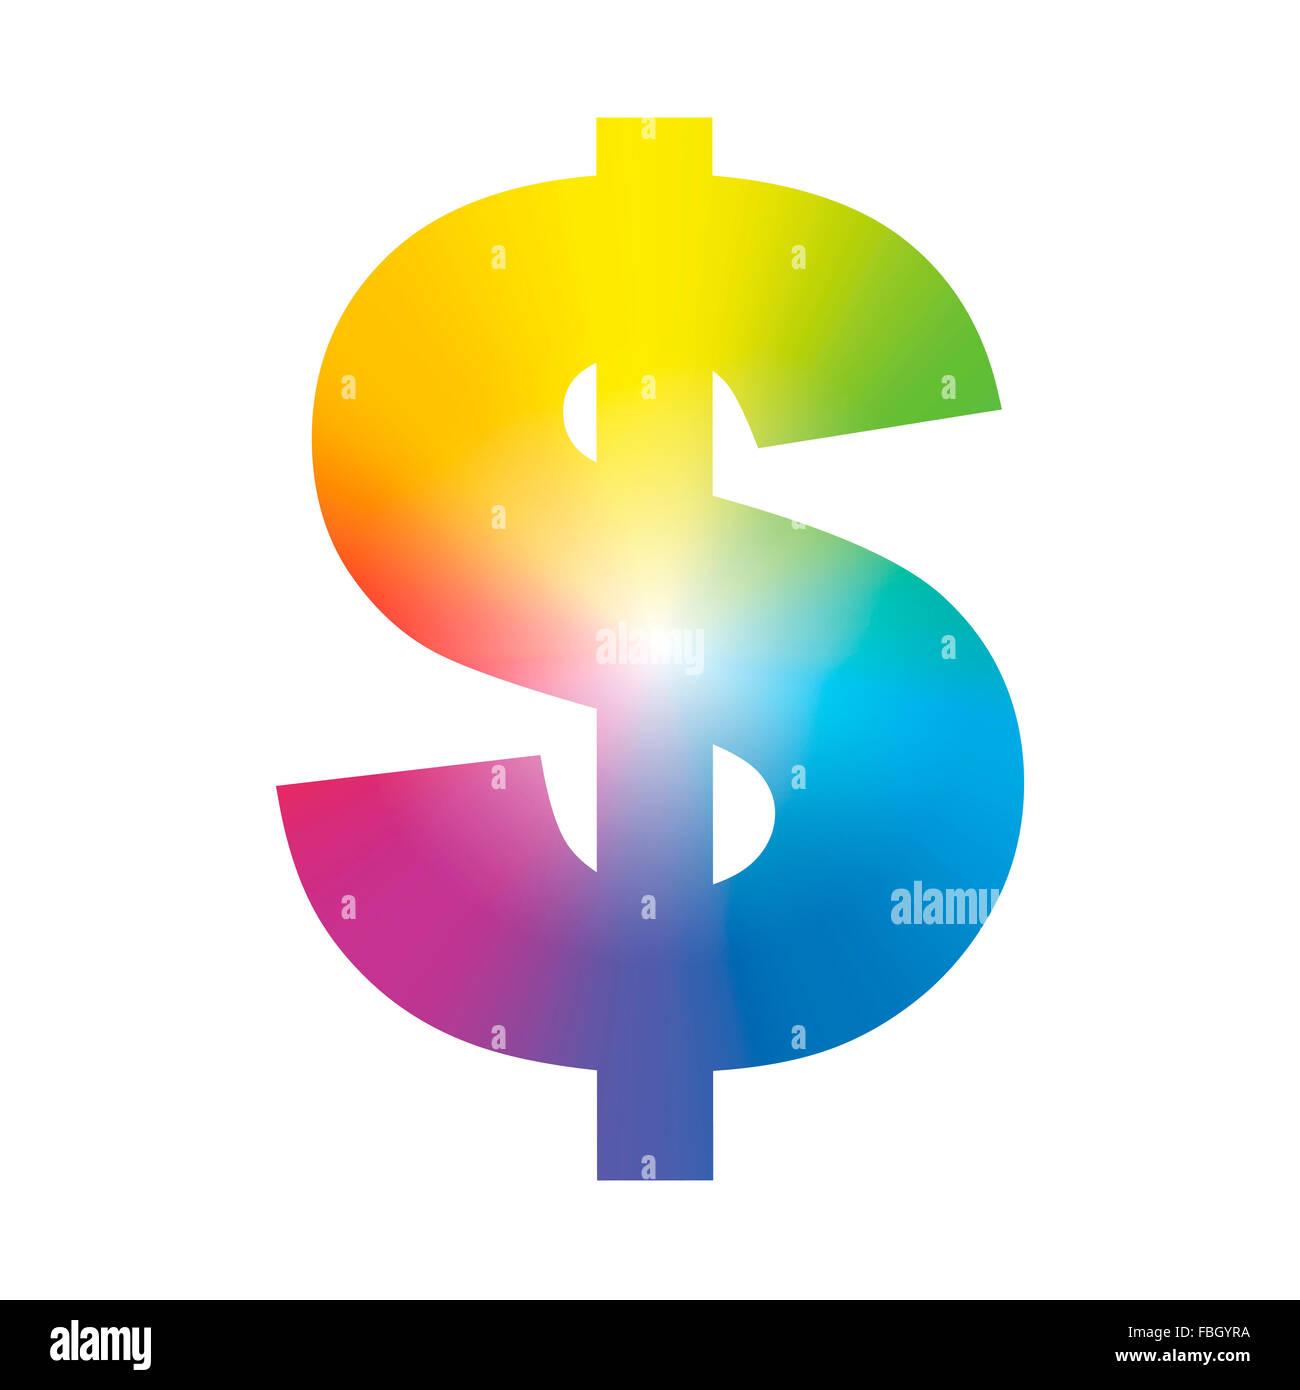 Simbolo del dollaro - gradiente arcobaleno colorato. Immagine su sfondo bianco. Foto Stock